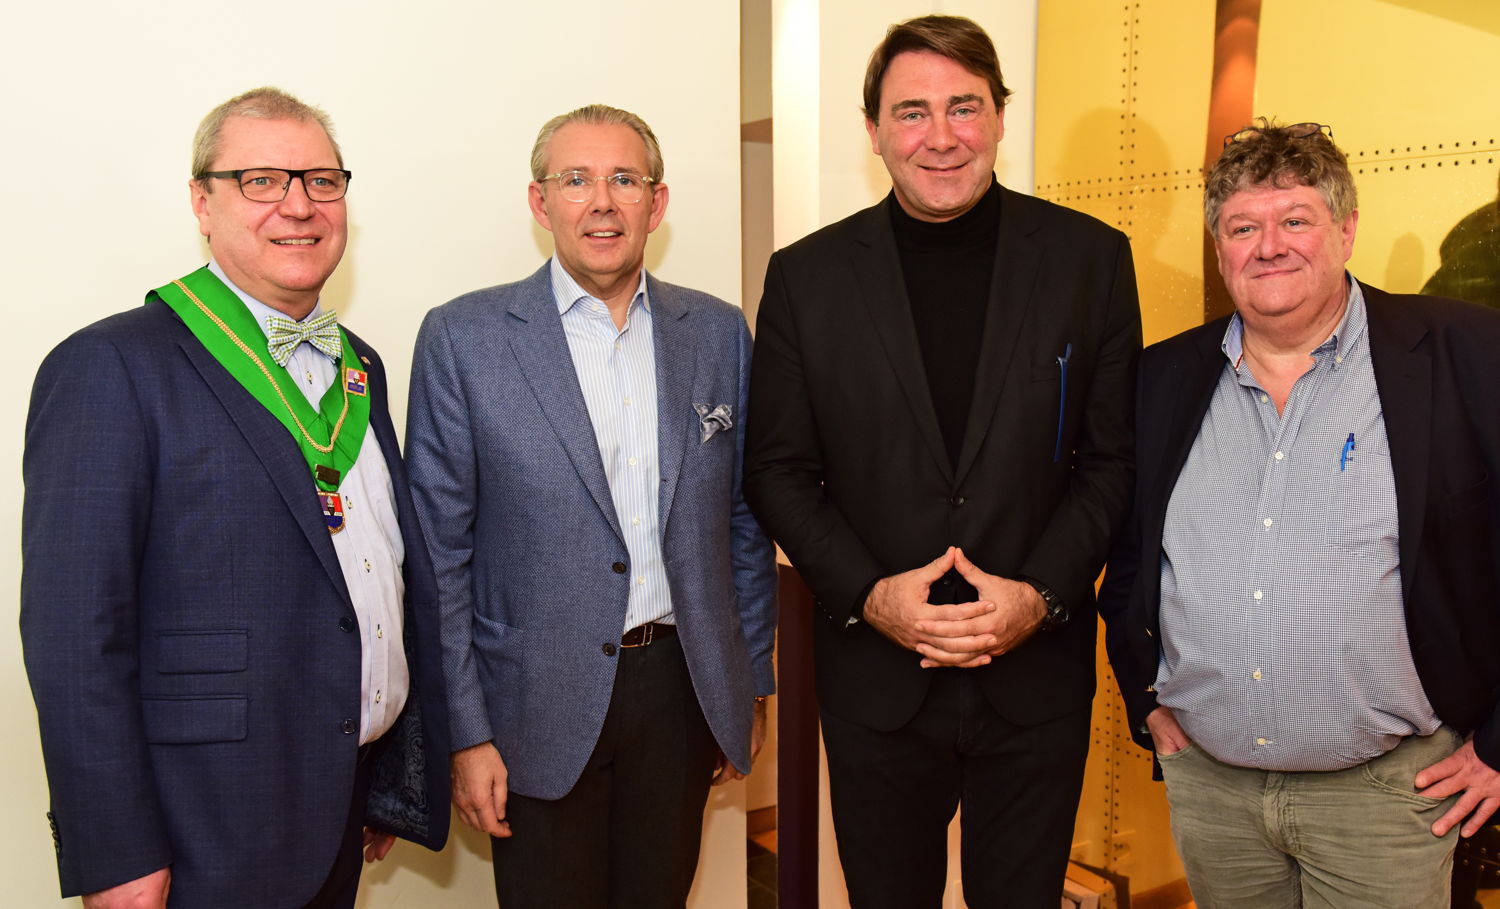 v.l.n.r.: Robert Van Landeghem, Peter Goossens, federaal minister Denis Ducarme & Eric Fernez